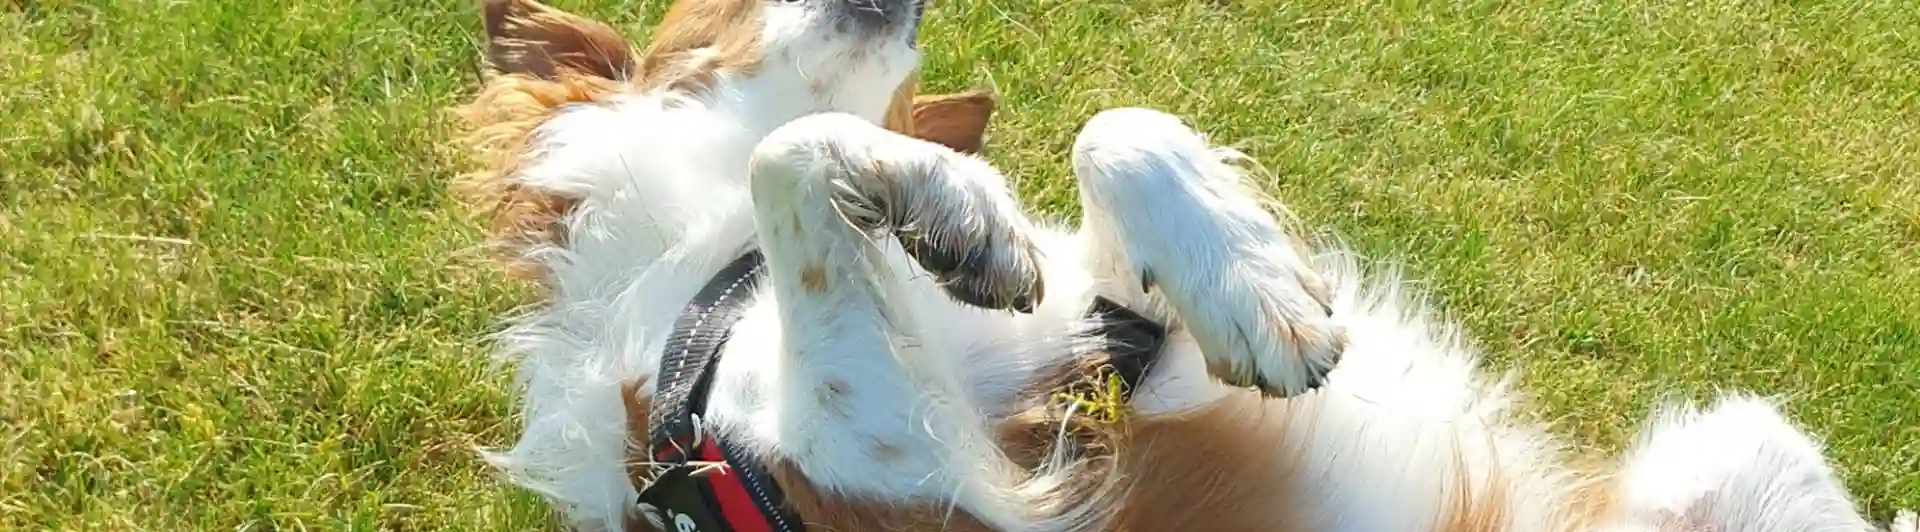 Hund som rullar på gräset